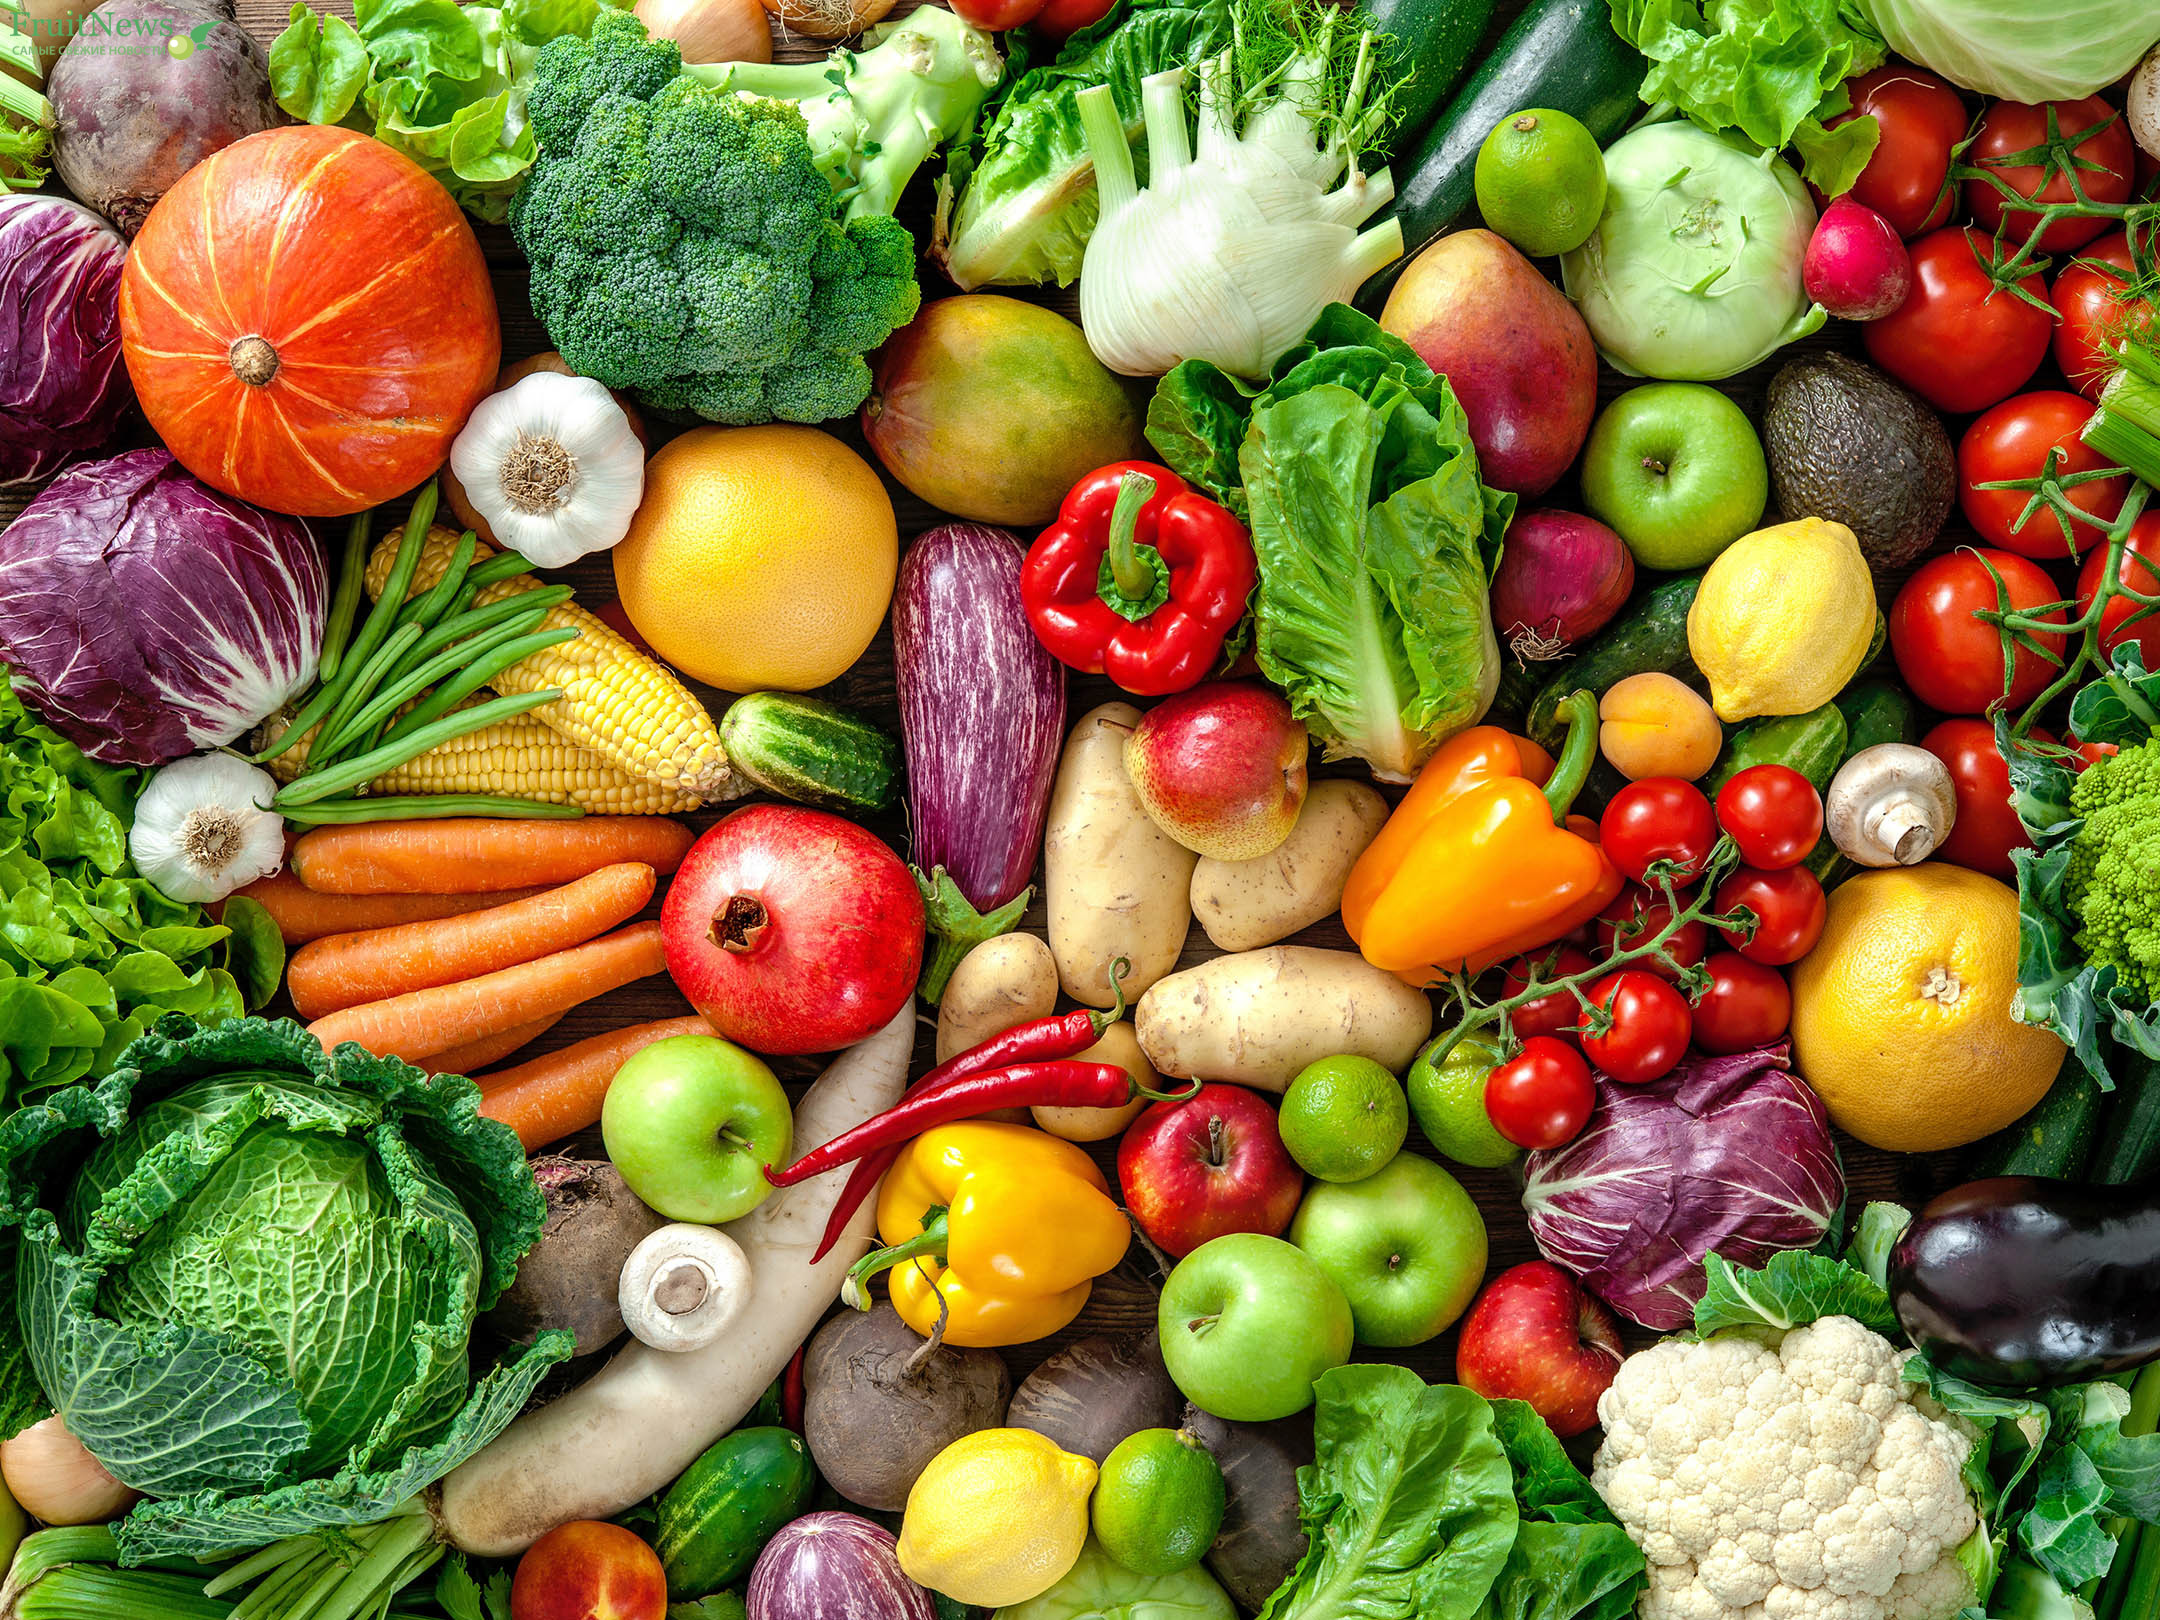 Аналитики сравнили цены на овощи в 98 странах. Украина попала в мировой рейтинг